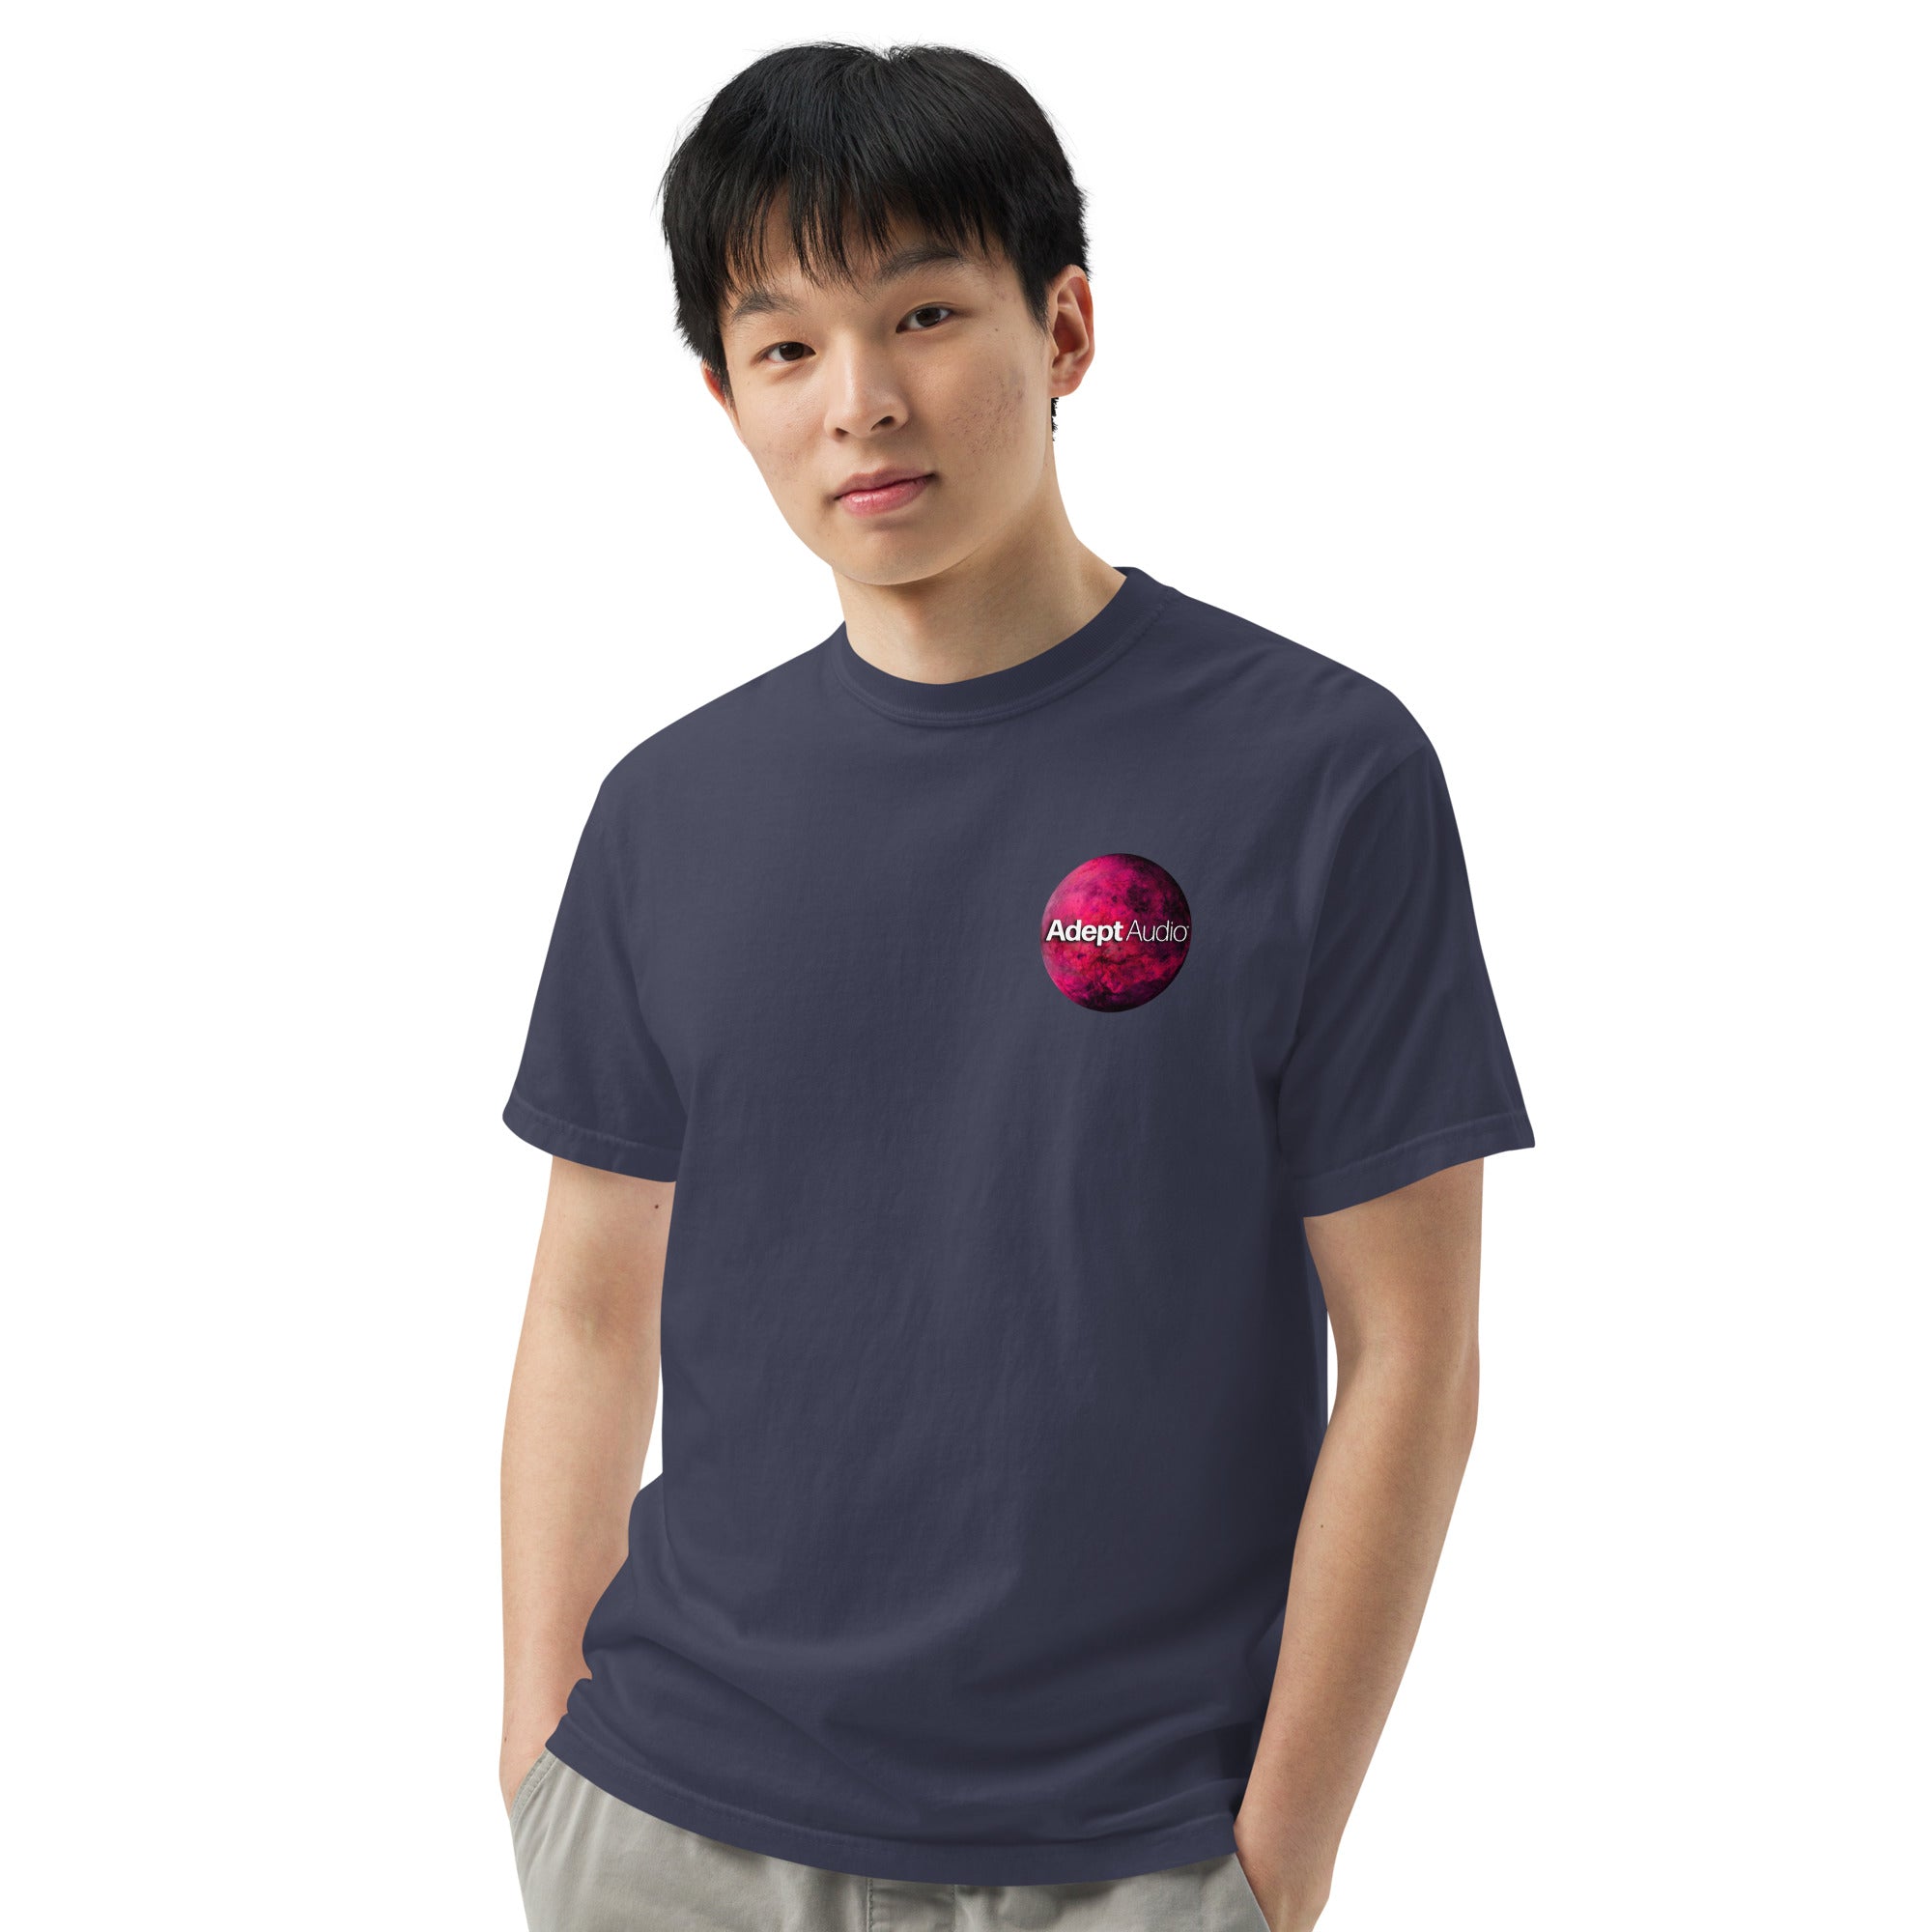 Men's garment-dyed heavyweight t-shirt